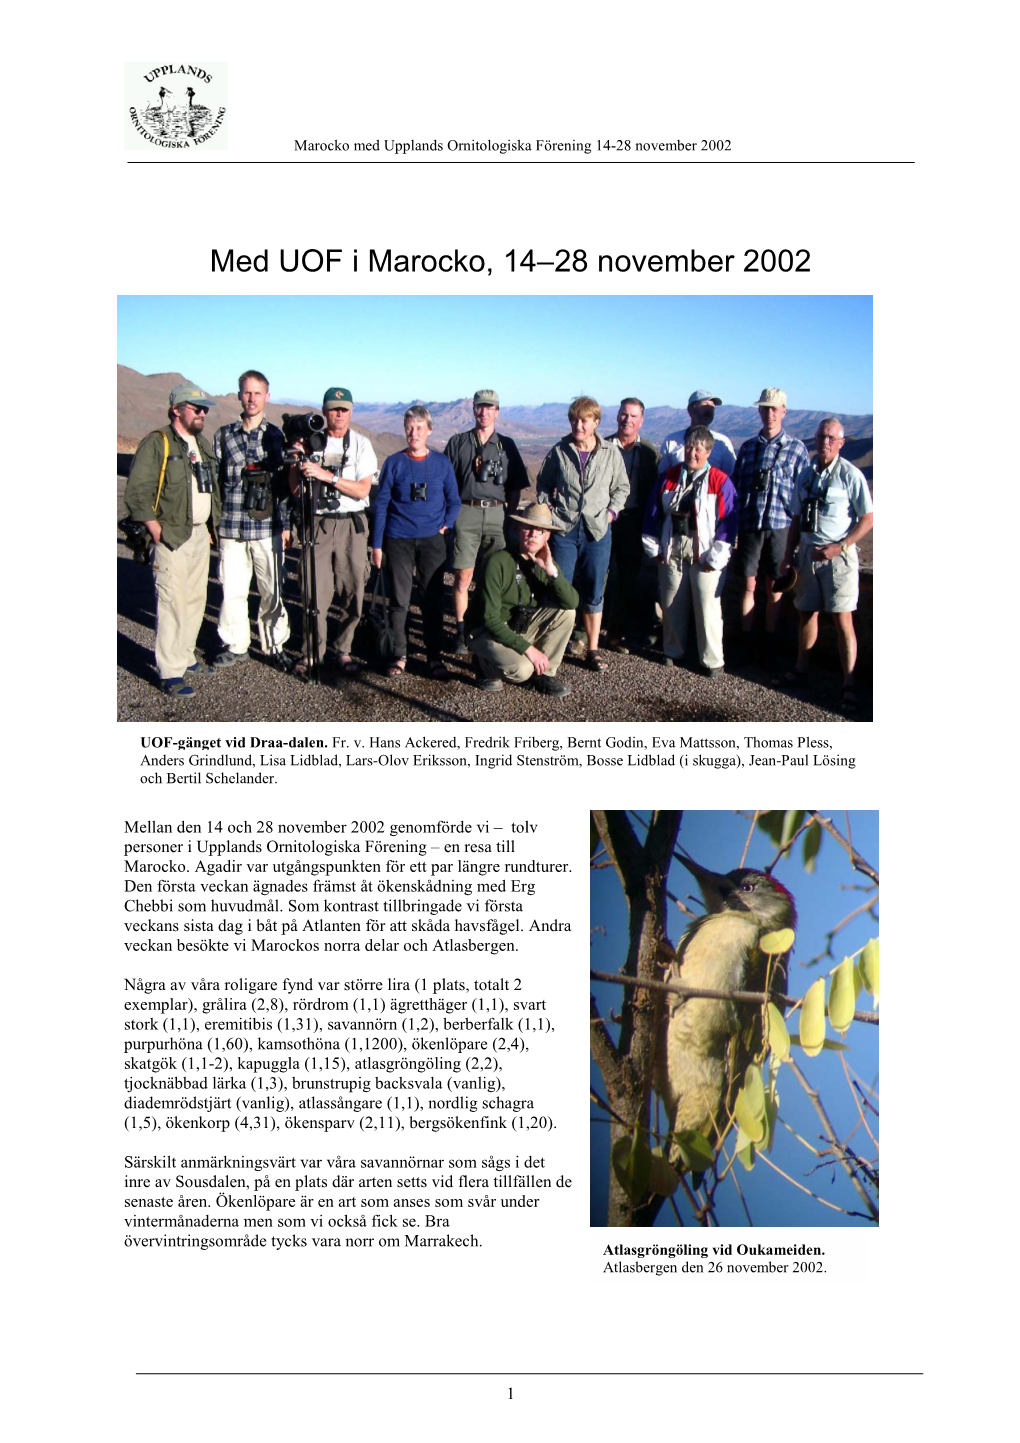 Med UOF I Marocko, 14–28 November 2002